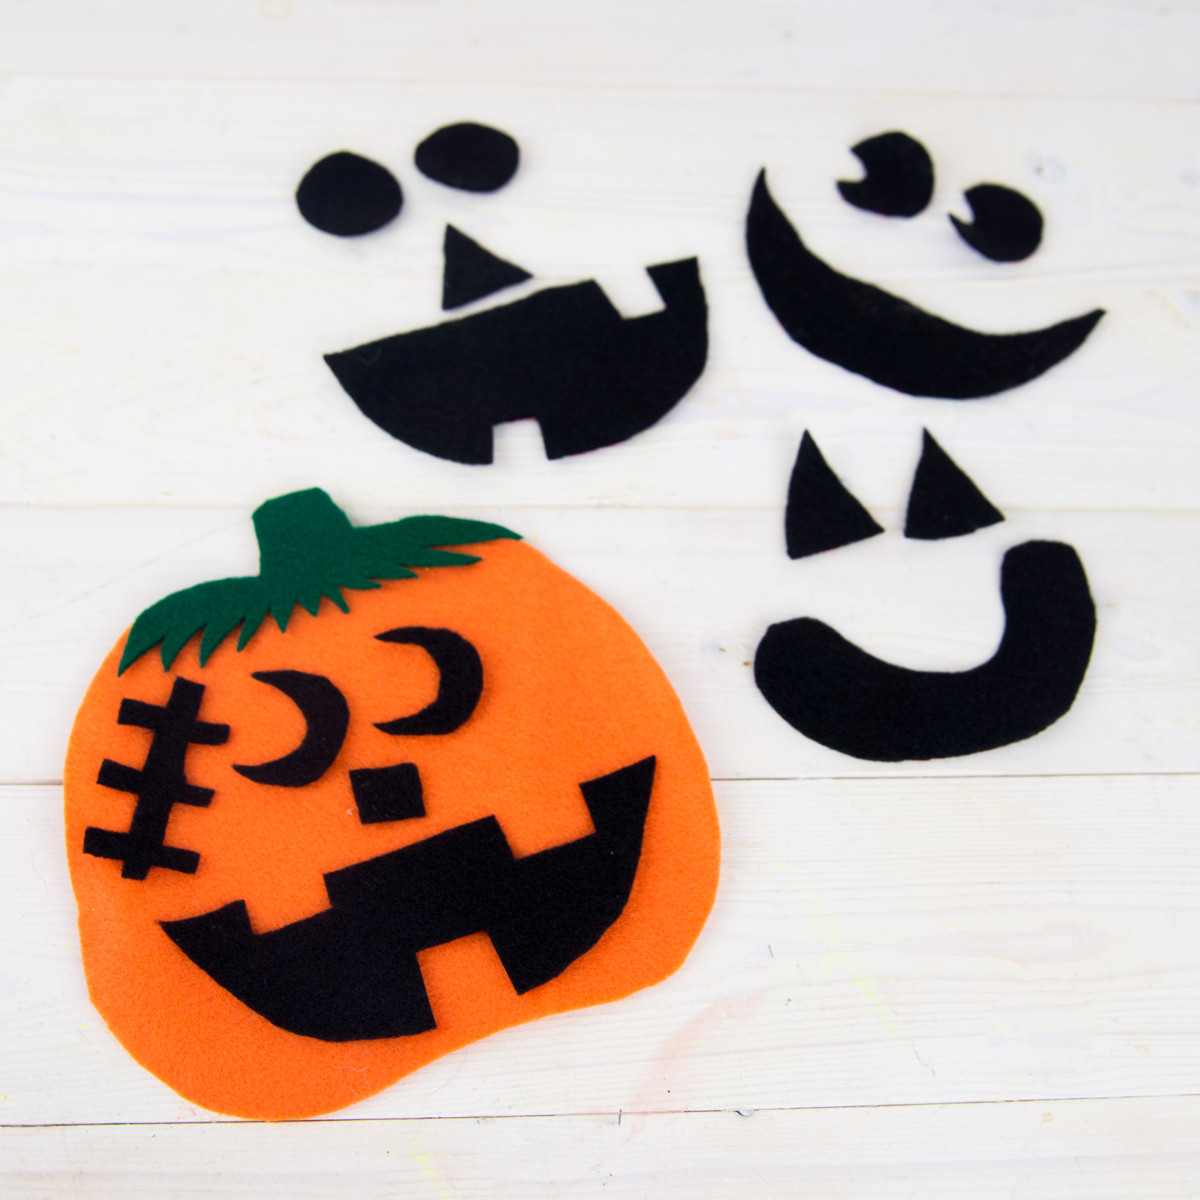 Pumpkin Craft Ideas Preschoolers
 Felt Pumpkin Preschool Craft